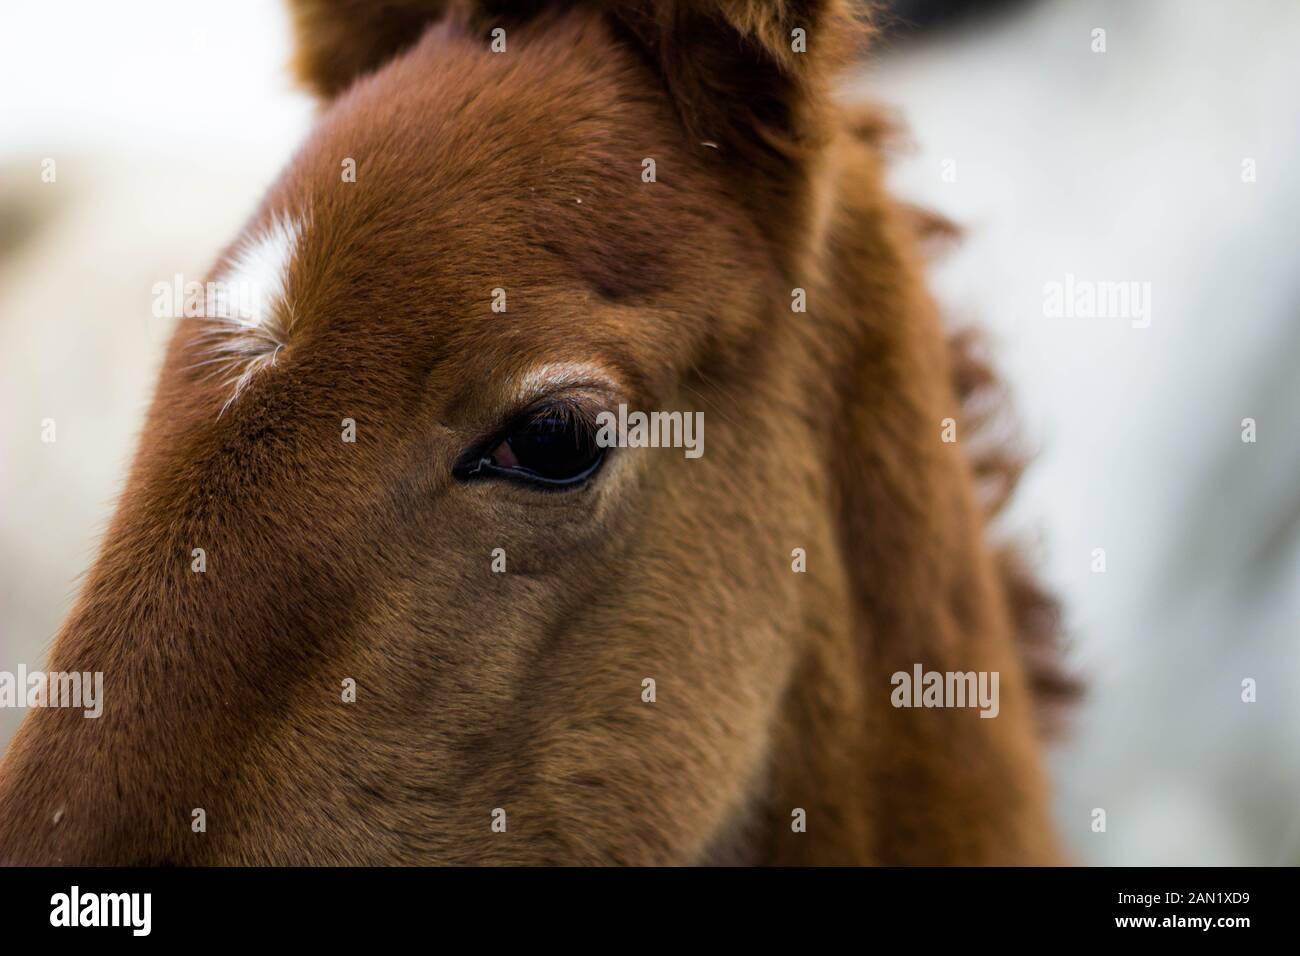 primo piano dell'occhio e della testa del cavallo marrone del bambino Foto Stock